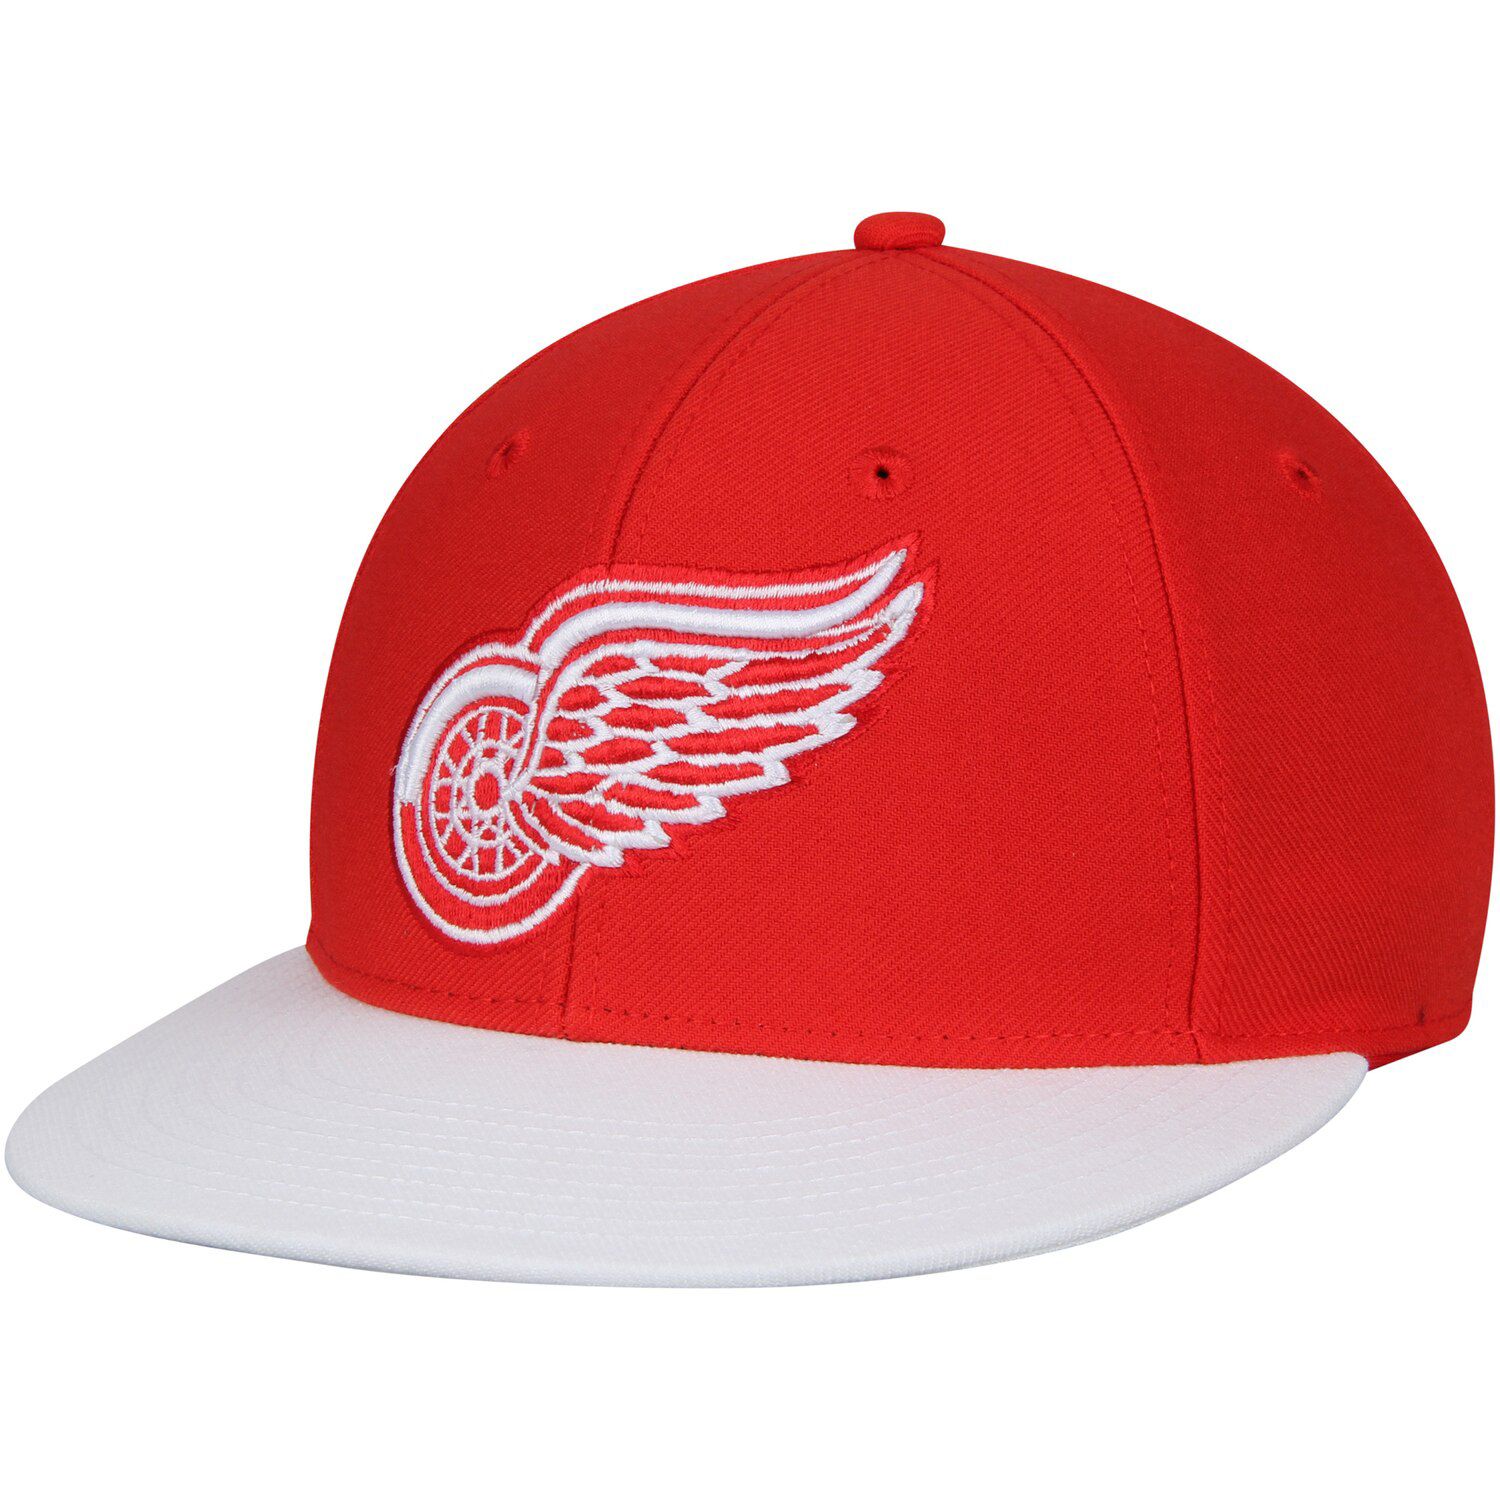 red wings cap